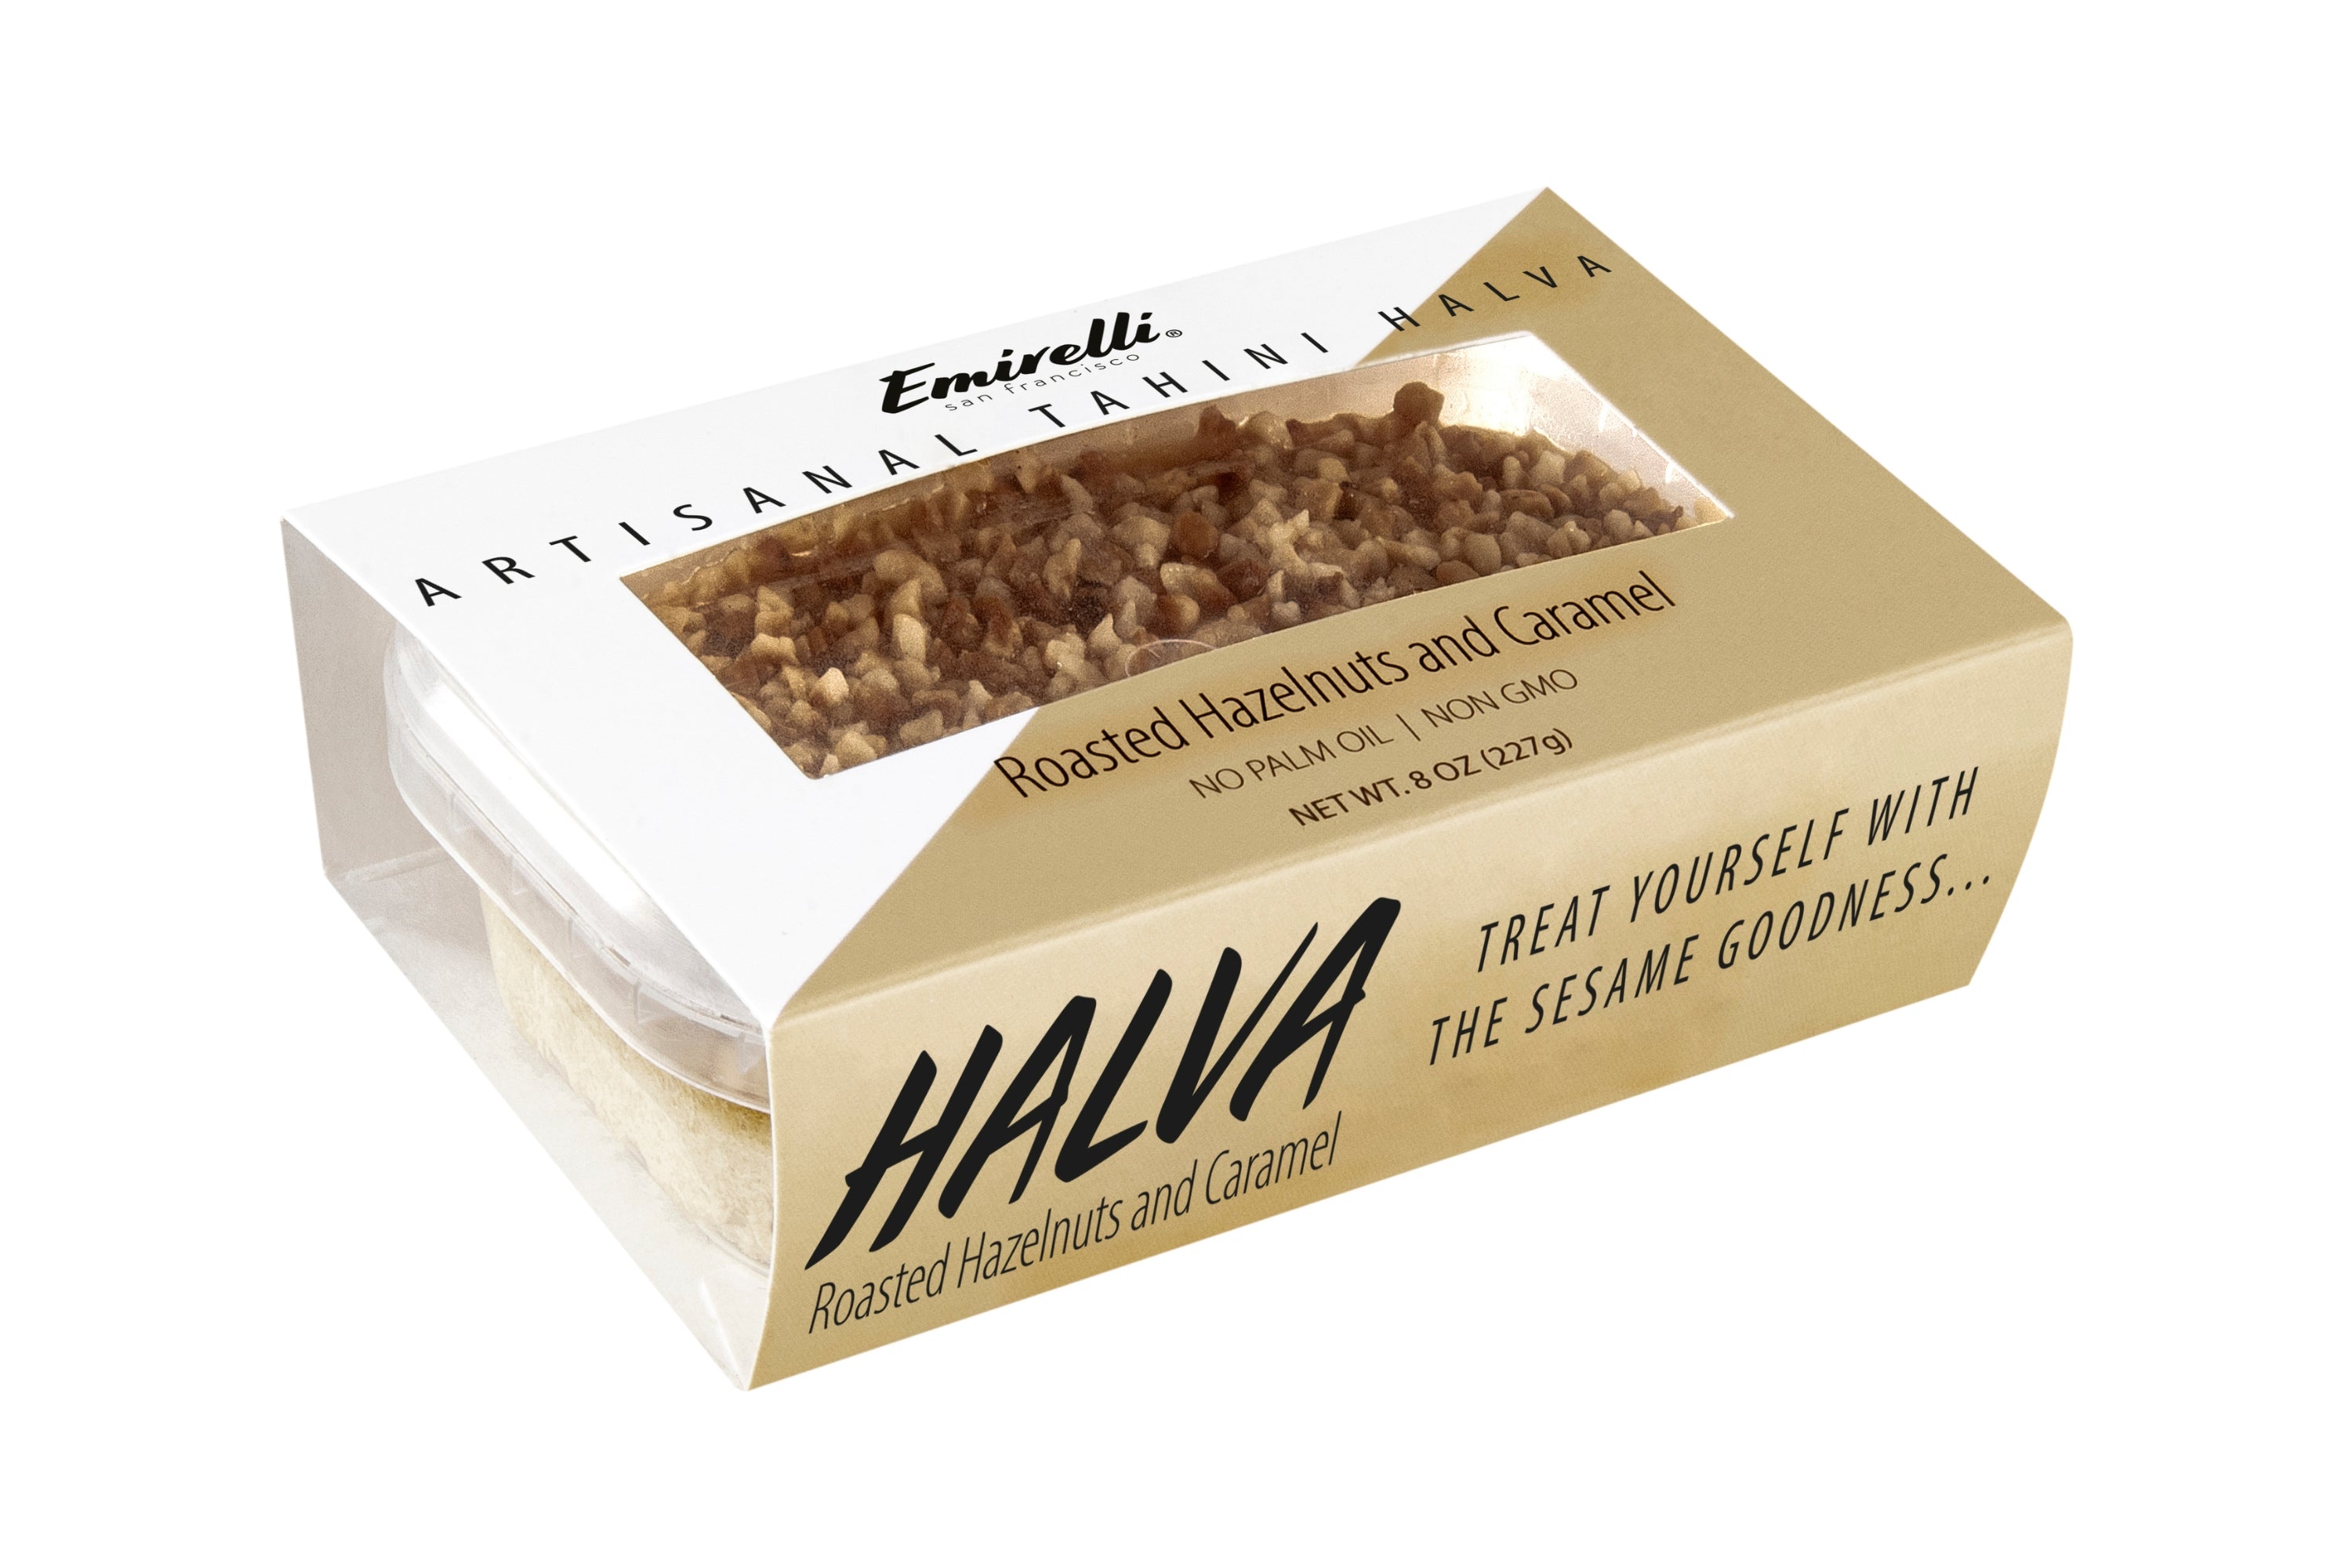 Emirelli Artisanal Tahini Halva Dessert - Roasted Hazelnuts & Caramel